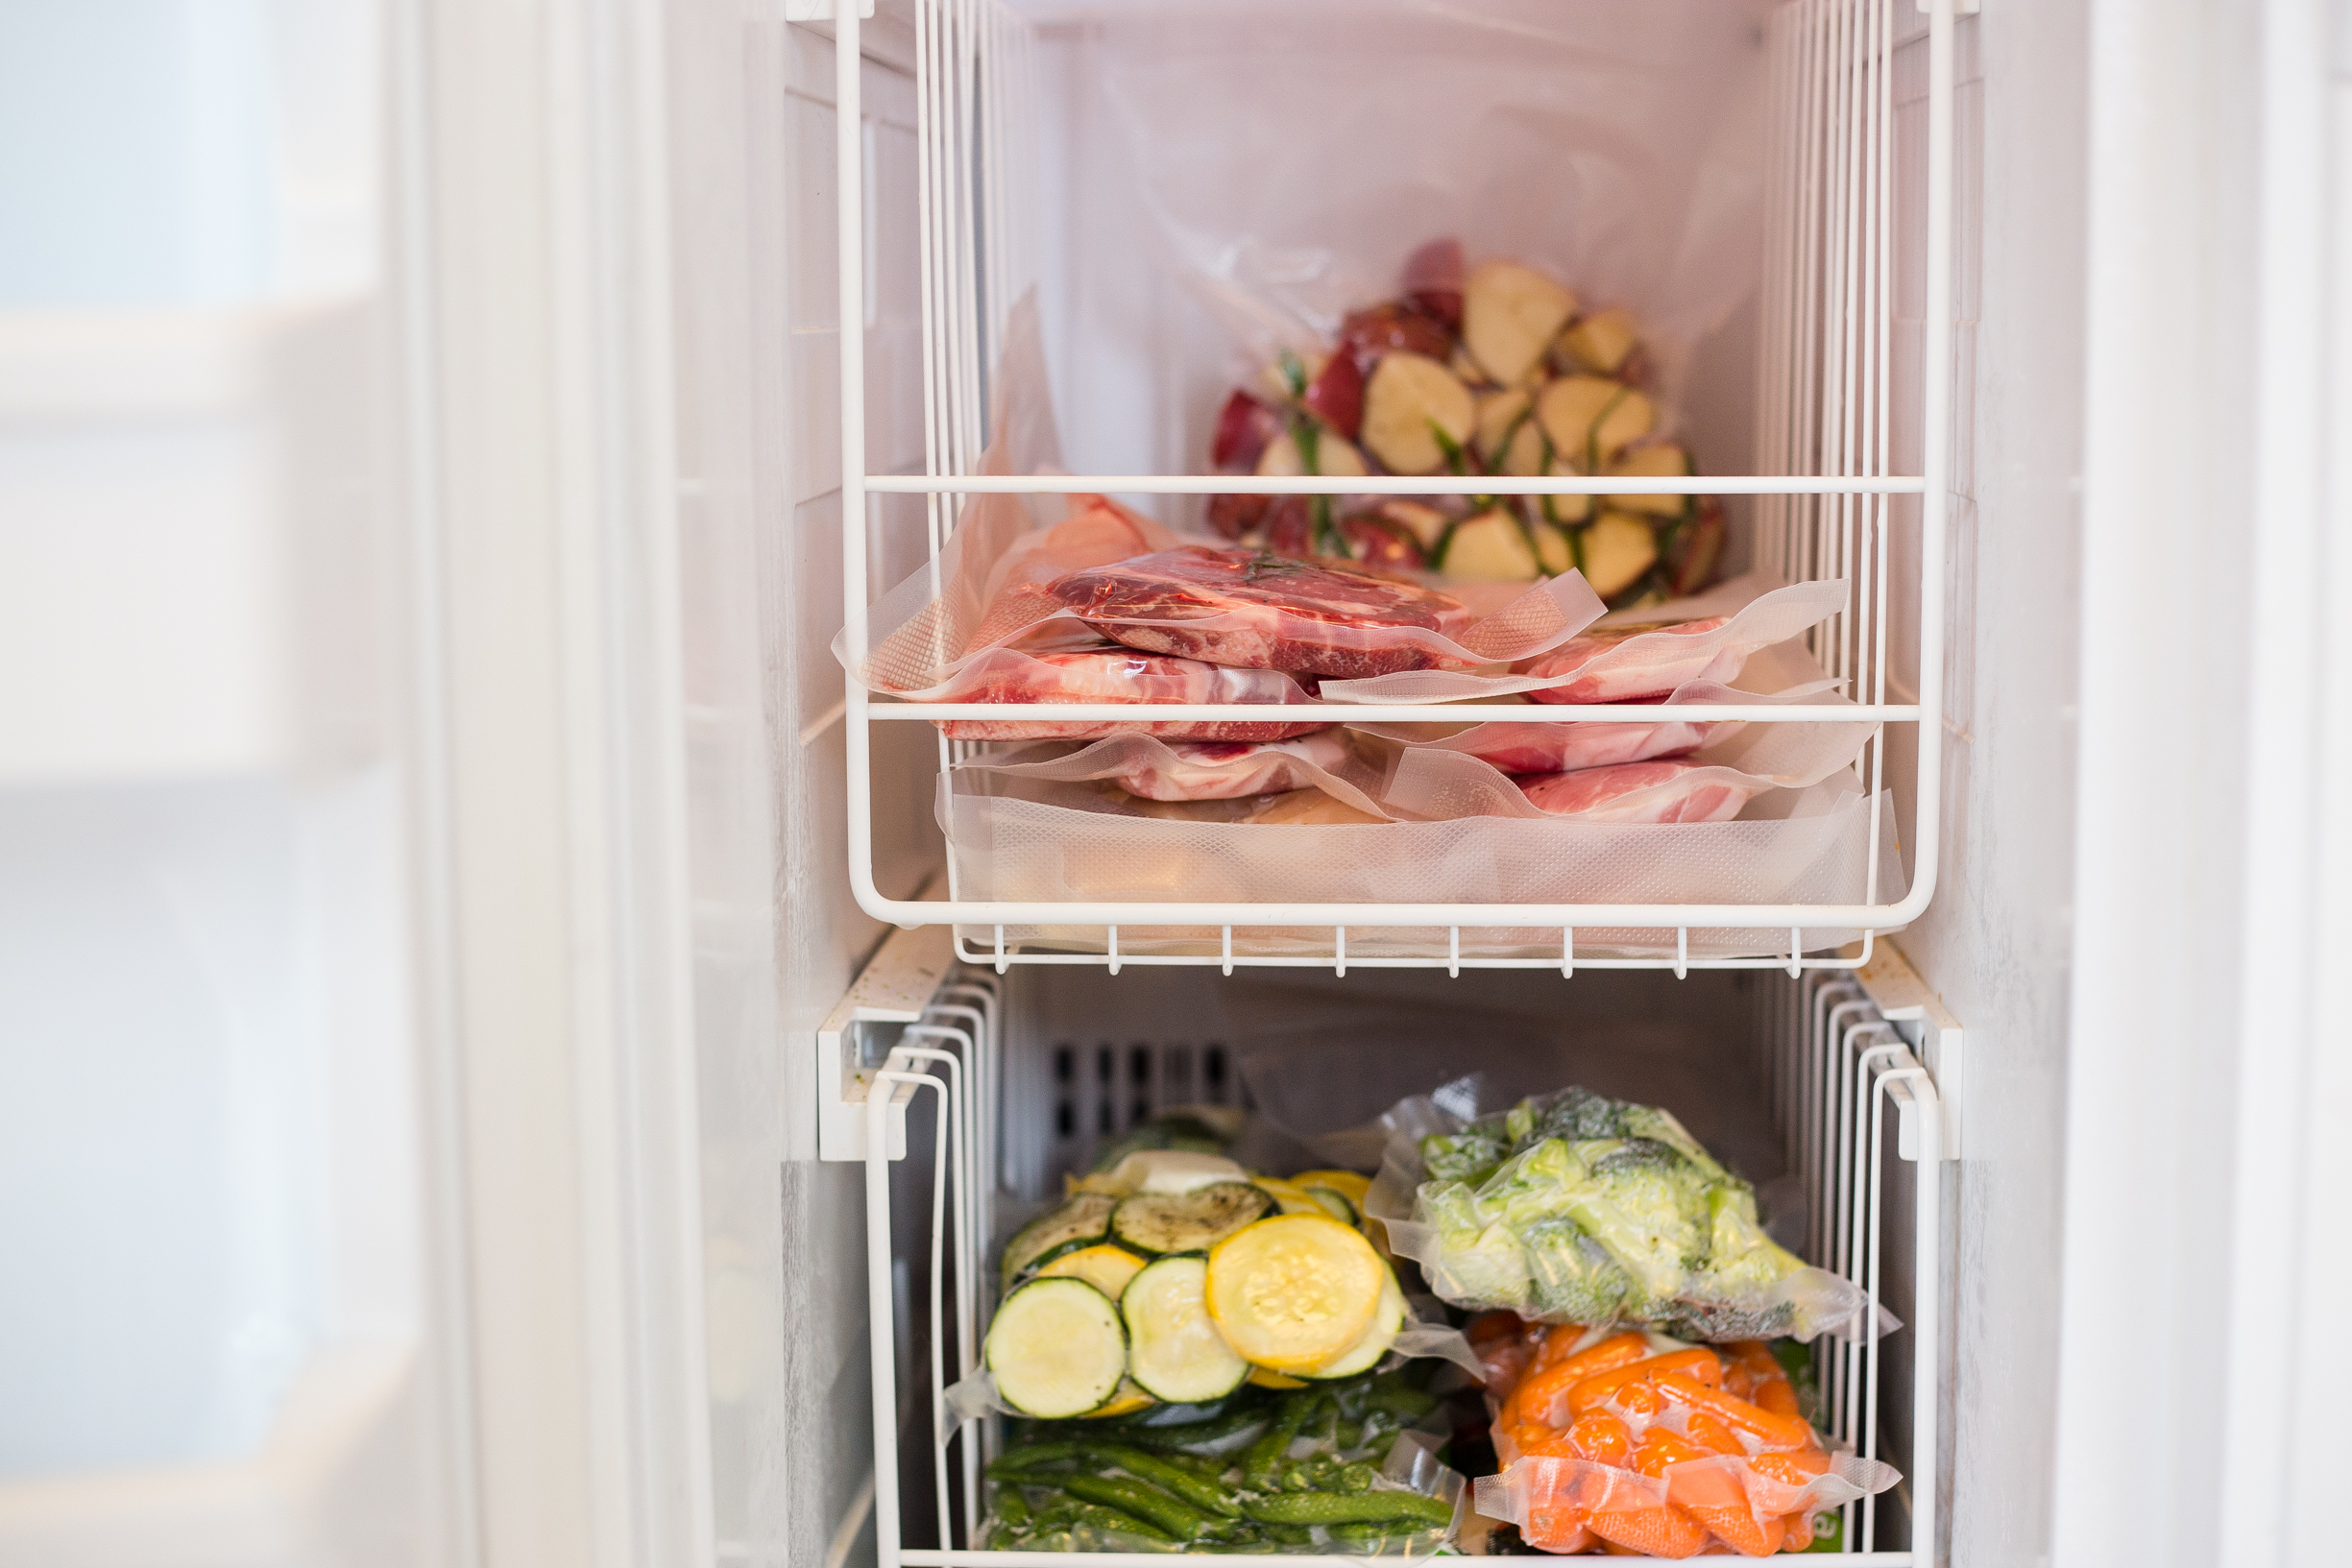 Organized freezer with vacuum sealed food